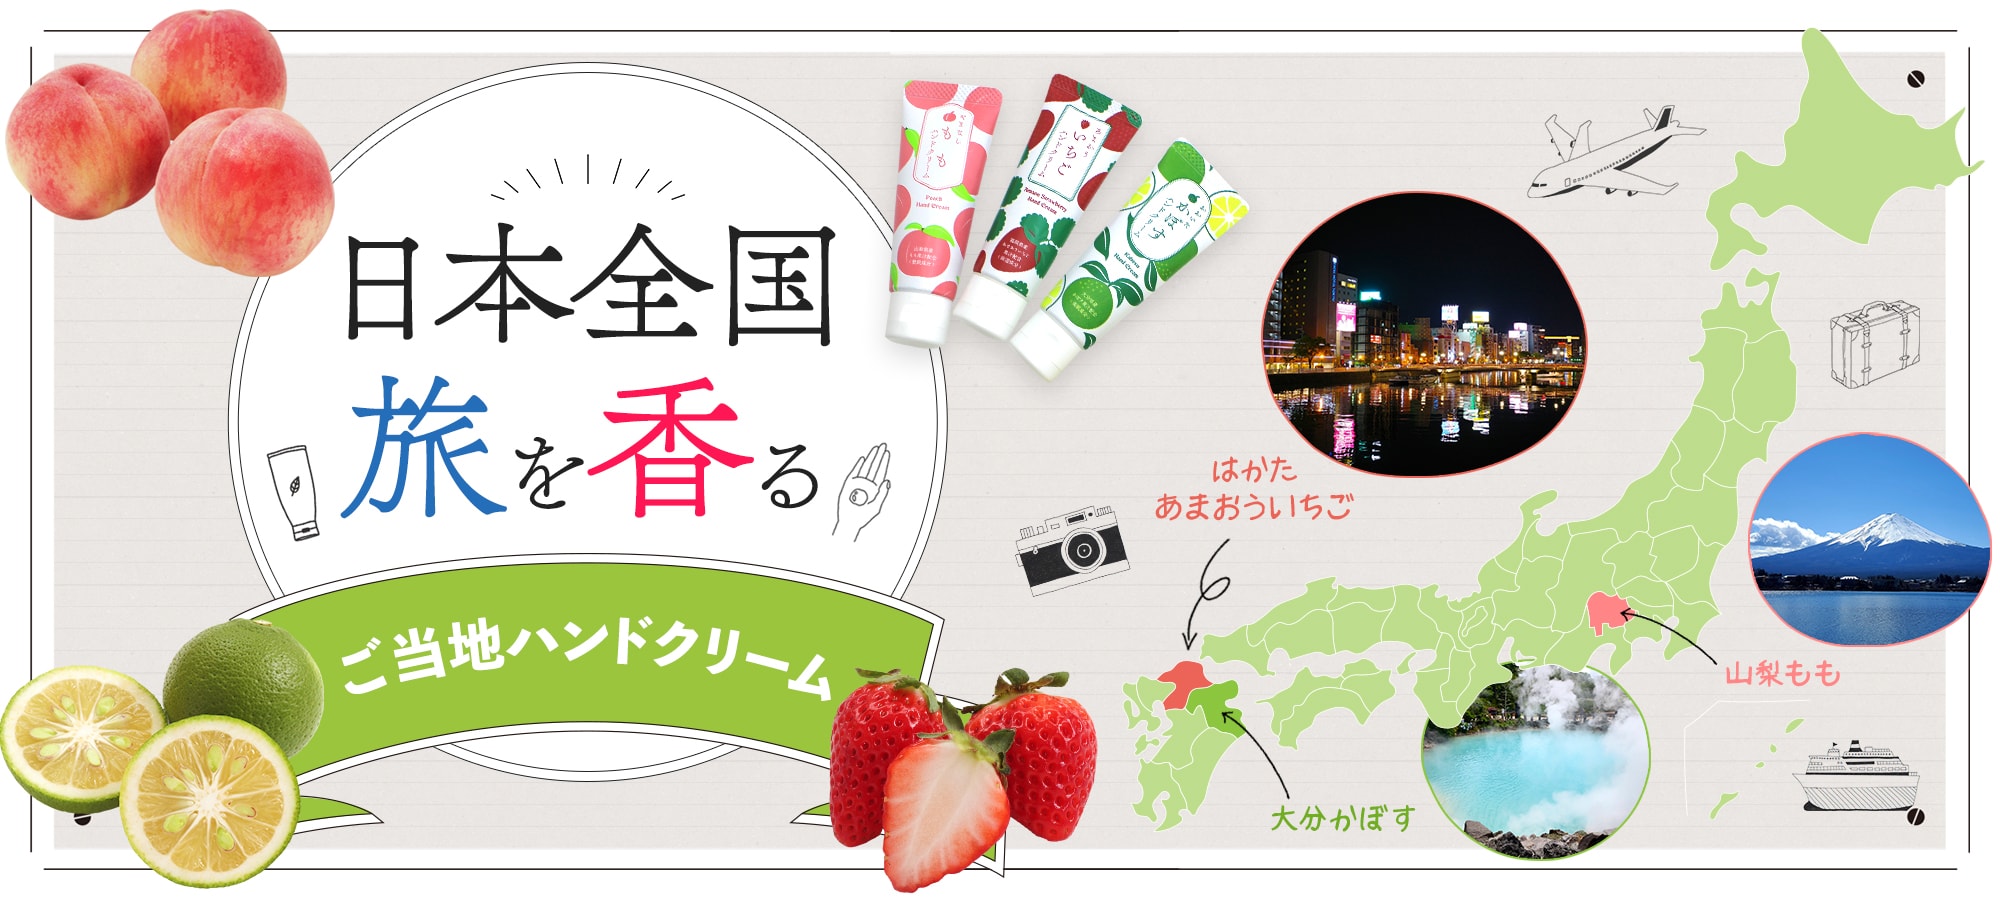 【日本全国旅を香るご当地ハンドクリーム】ご当地コスメでいつでもどこでもはっぴぃタイム。プチプラで楽しい旅行気分を。